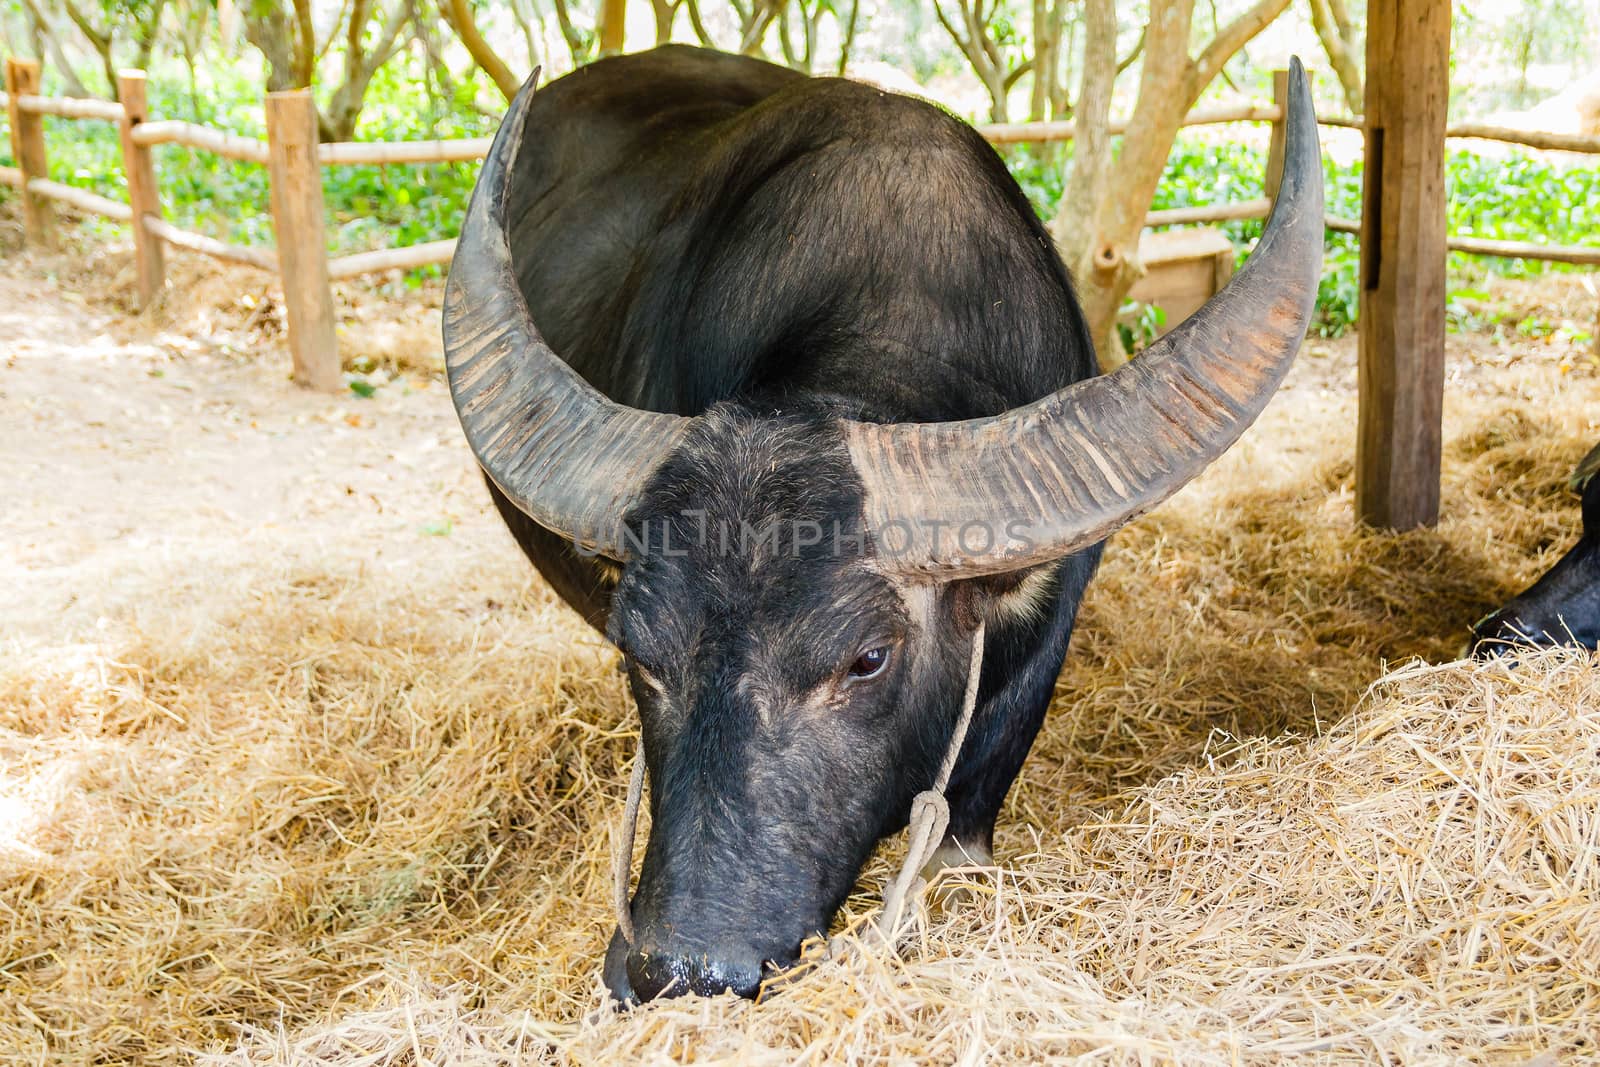 Black buffalo eating hay in barn.